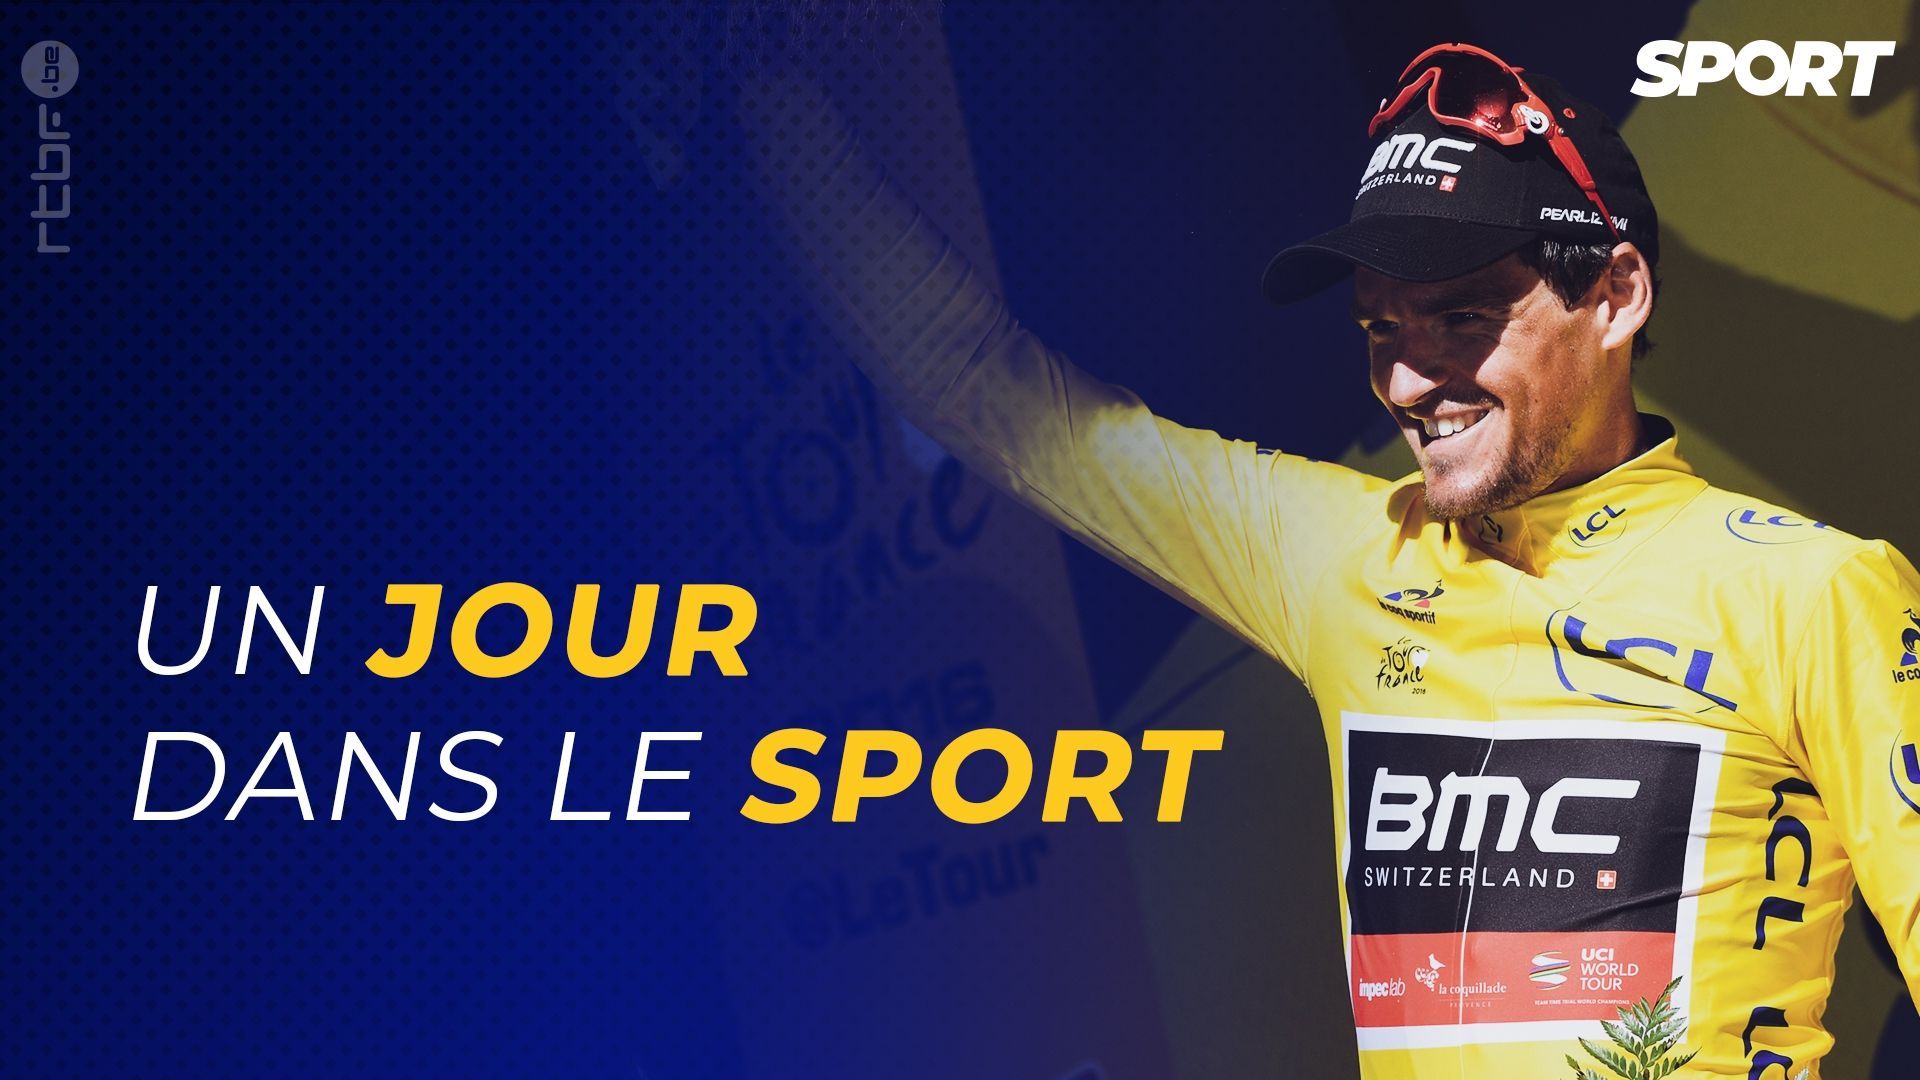 Cyclisme - Tour de France : retour sur la victoire d'étape et la maillot jaune de Greg Van Avermaet en 2016 dans notre podcast : "Un jour dans le sport"